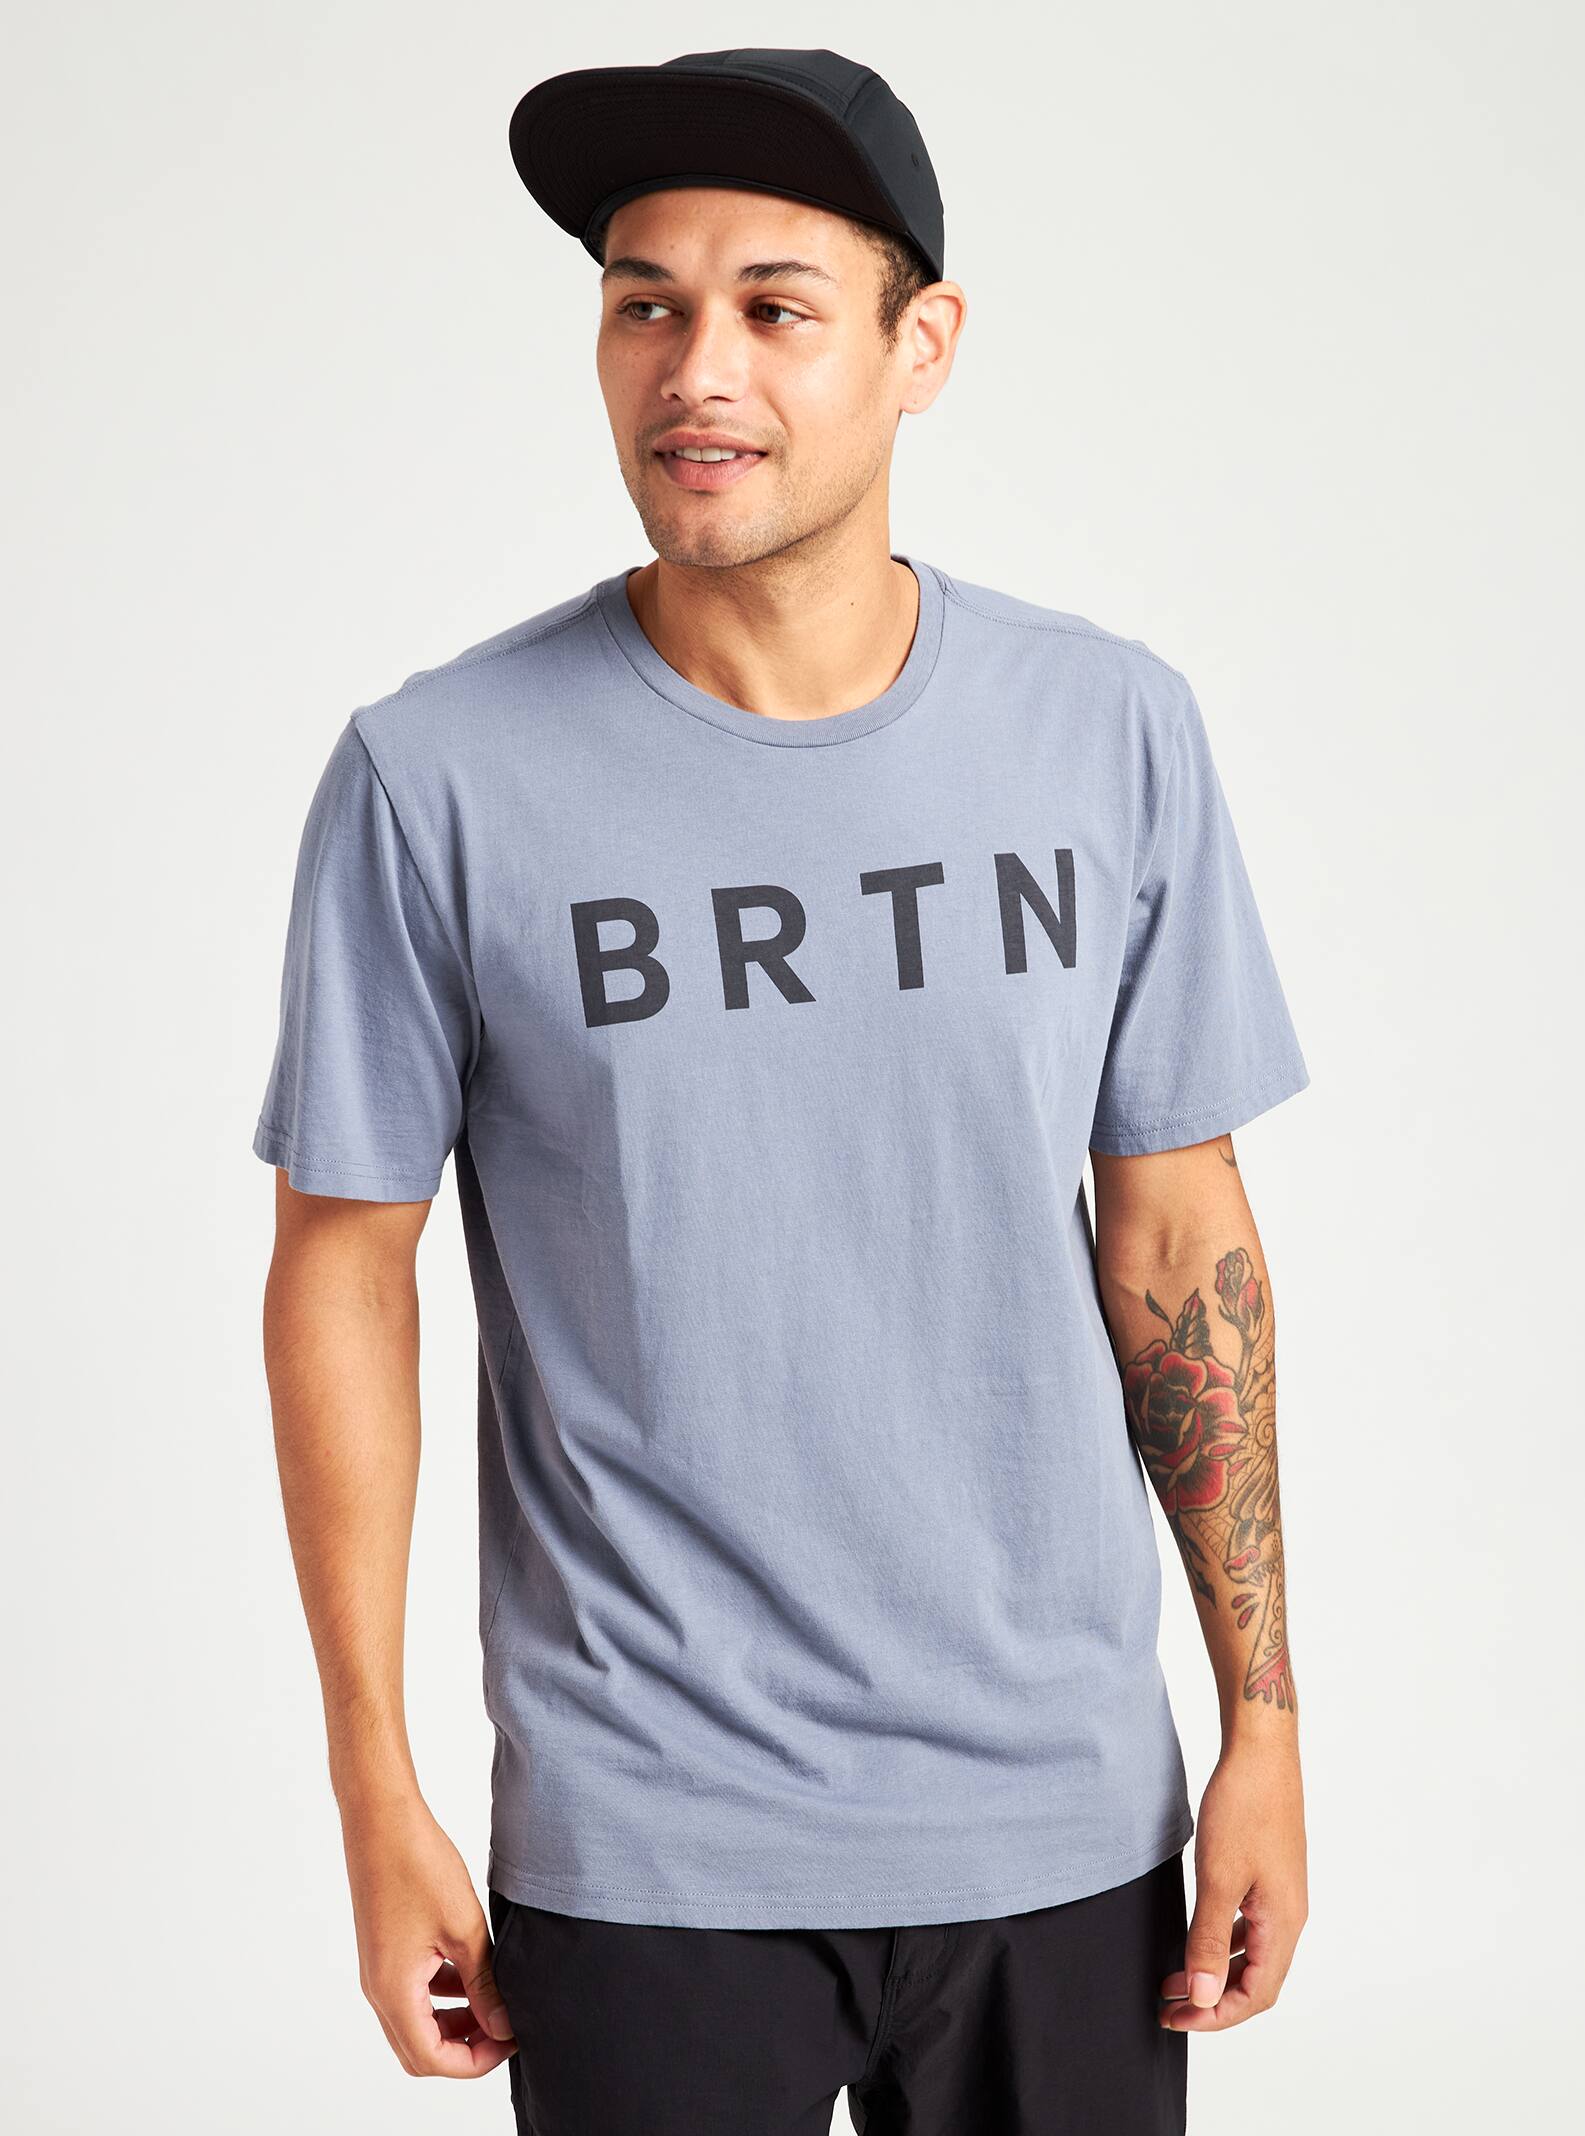 Burton Brtn Short Sleeve 